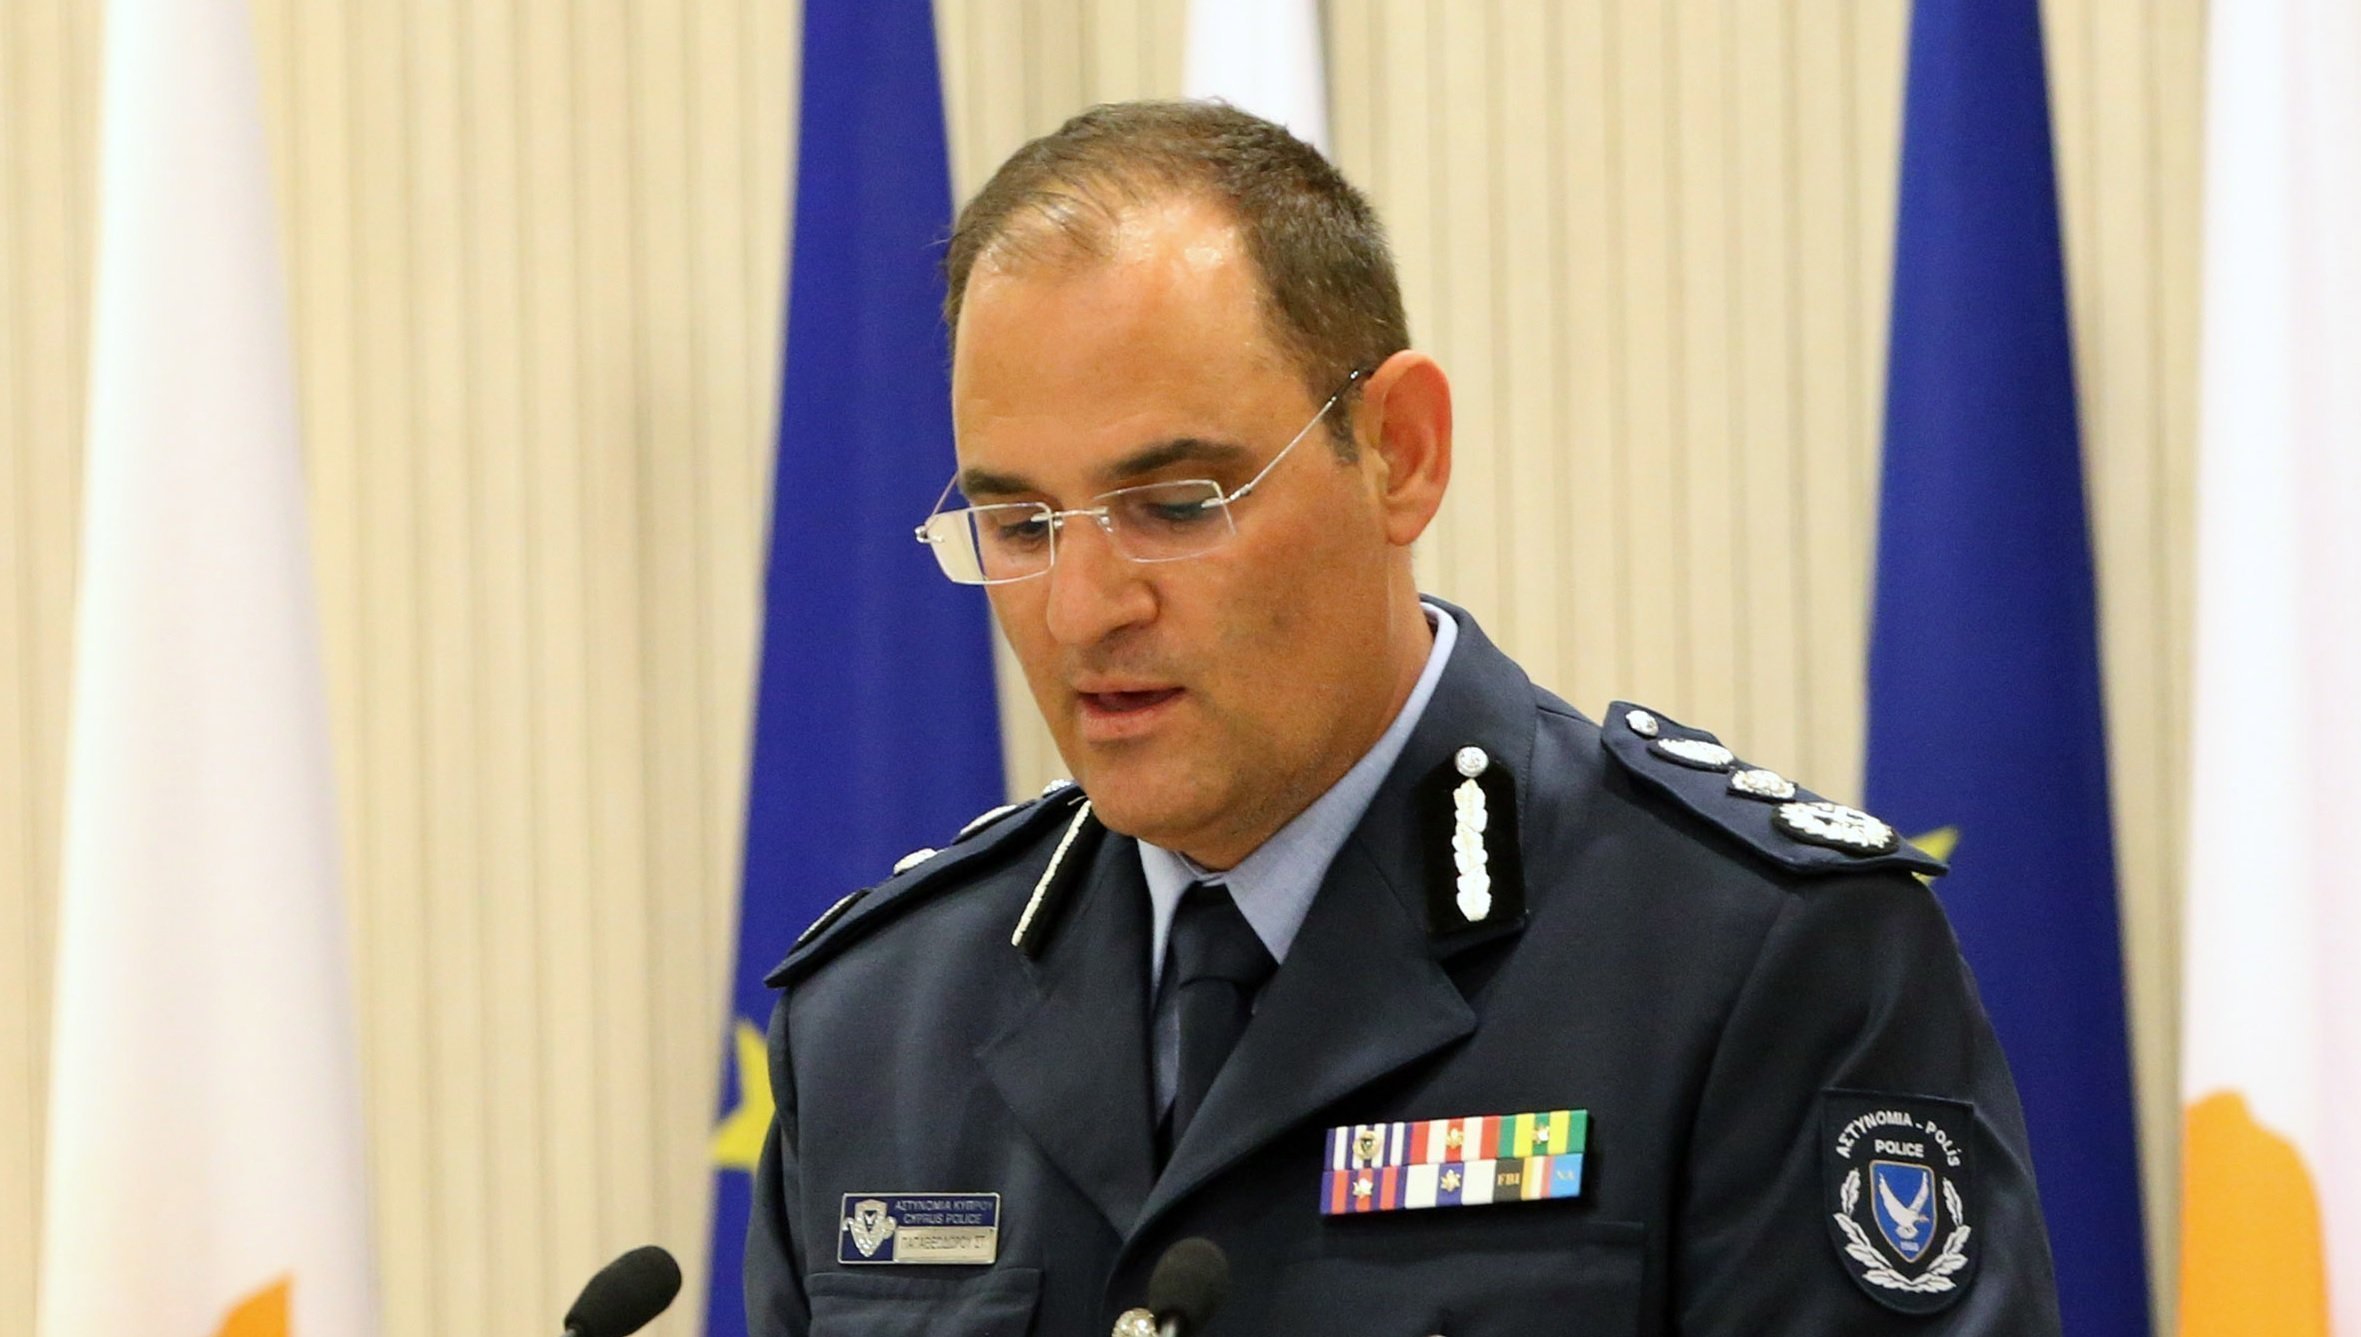 Ο Αρχηγός Αστυνομίας ζήτησε έκθεση για απόδραση υπόδικου από Λακατάμια